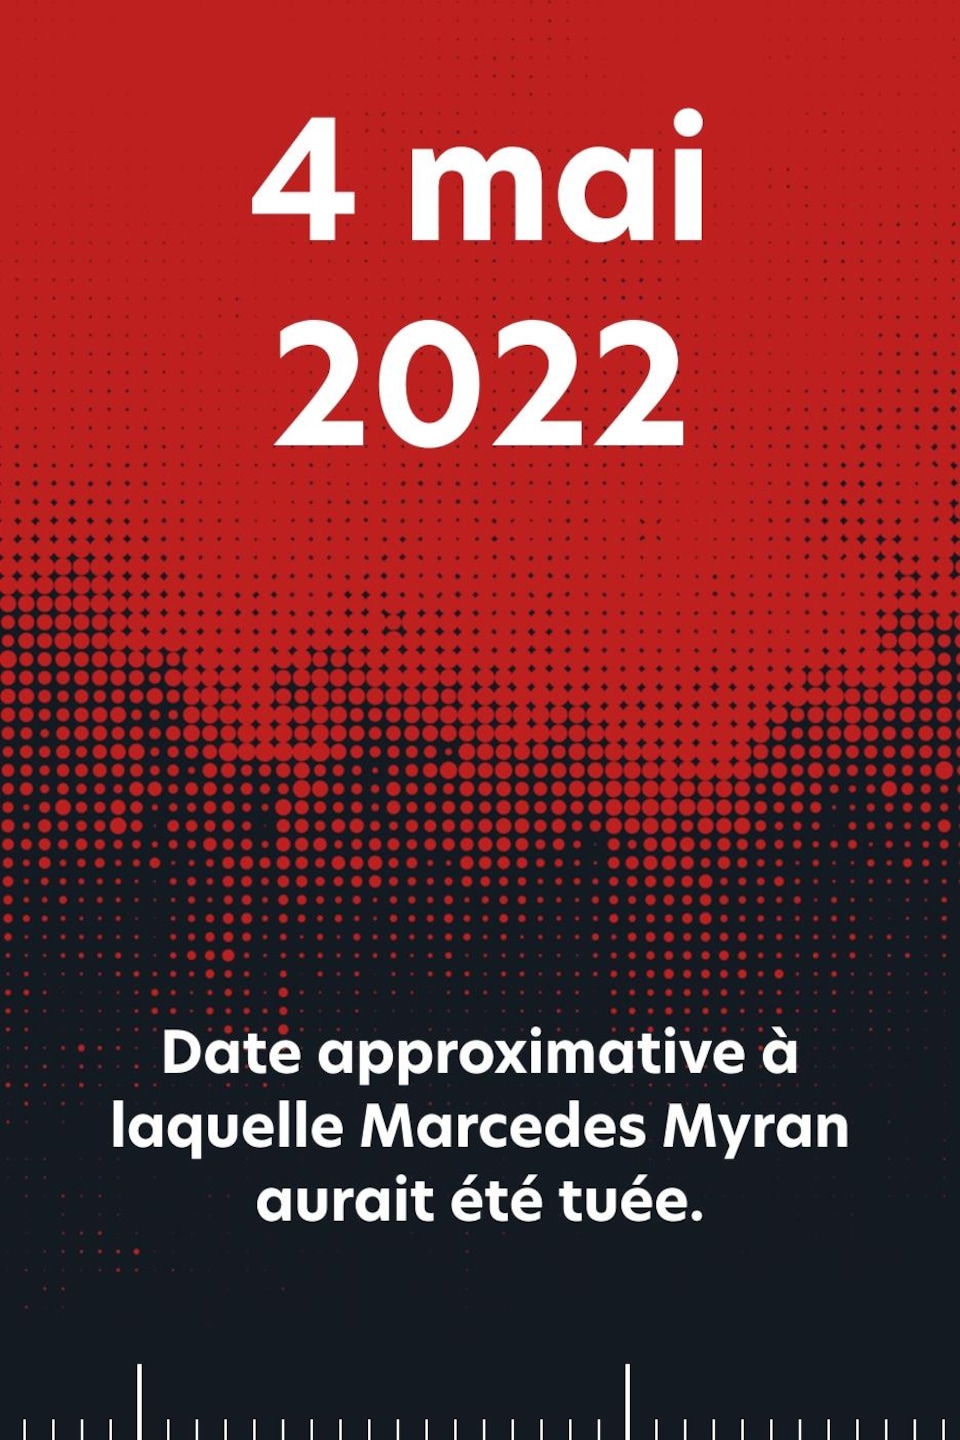 4 mai 2022 : date approximative à laquelle Marcedes Myran aurait été tuée.